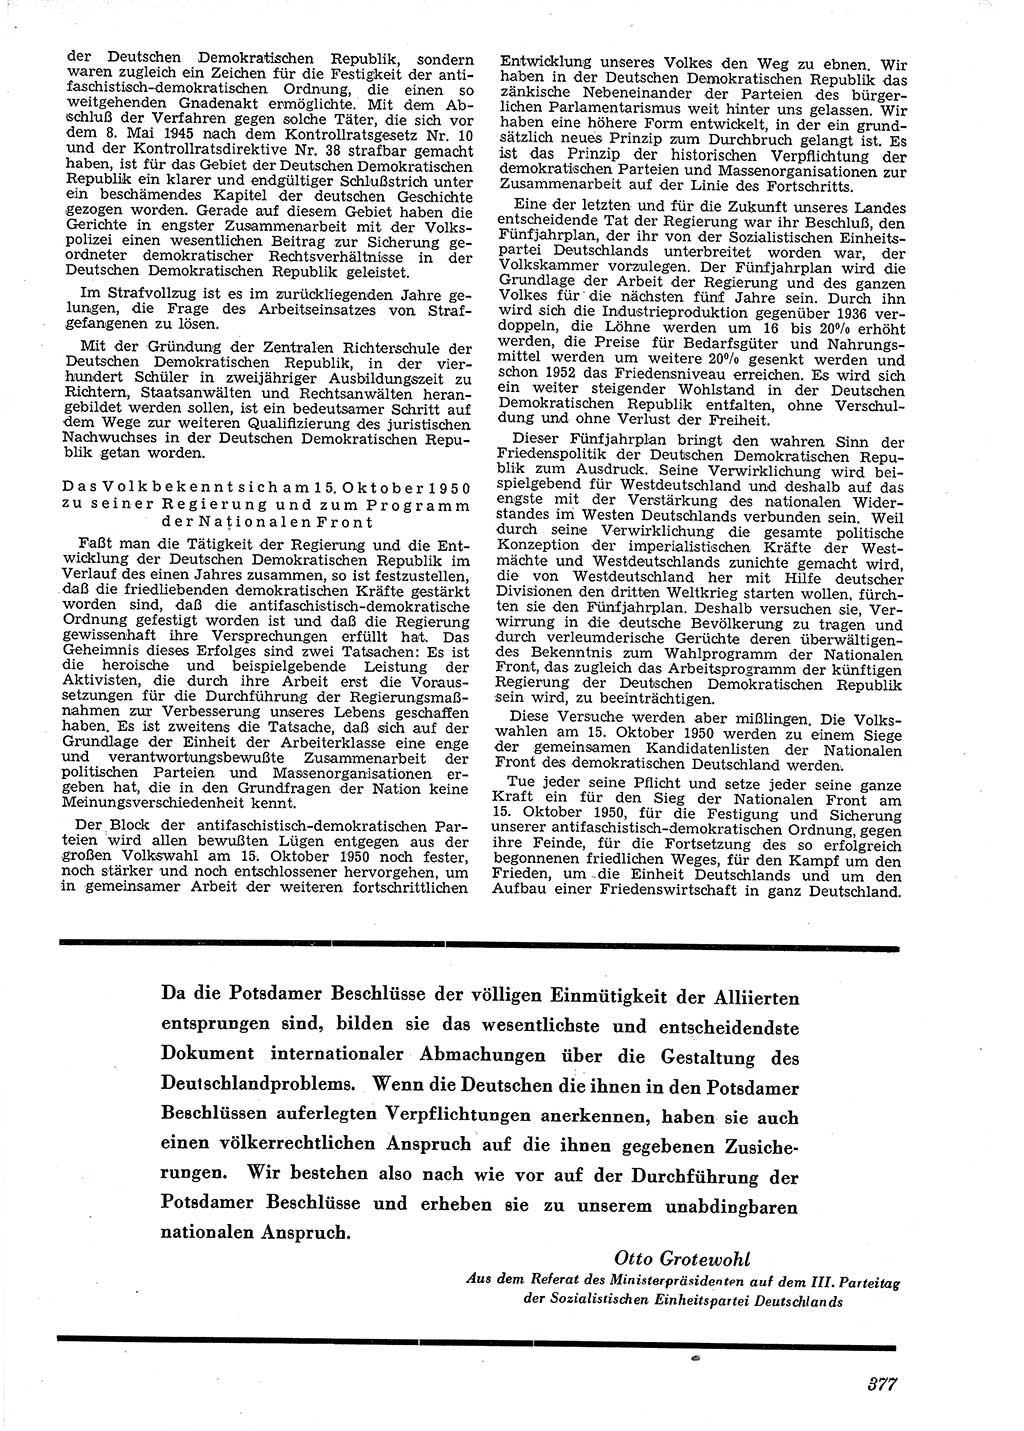 Neue Justiz (NJ), Zeitschrift für Recht und Rechtswissenschaft [Deutsche Demokratische Republik (DDR)], 4. Jahrgang 1950, Seite 377 (NJ DDR 1950, S. 377)